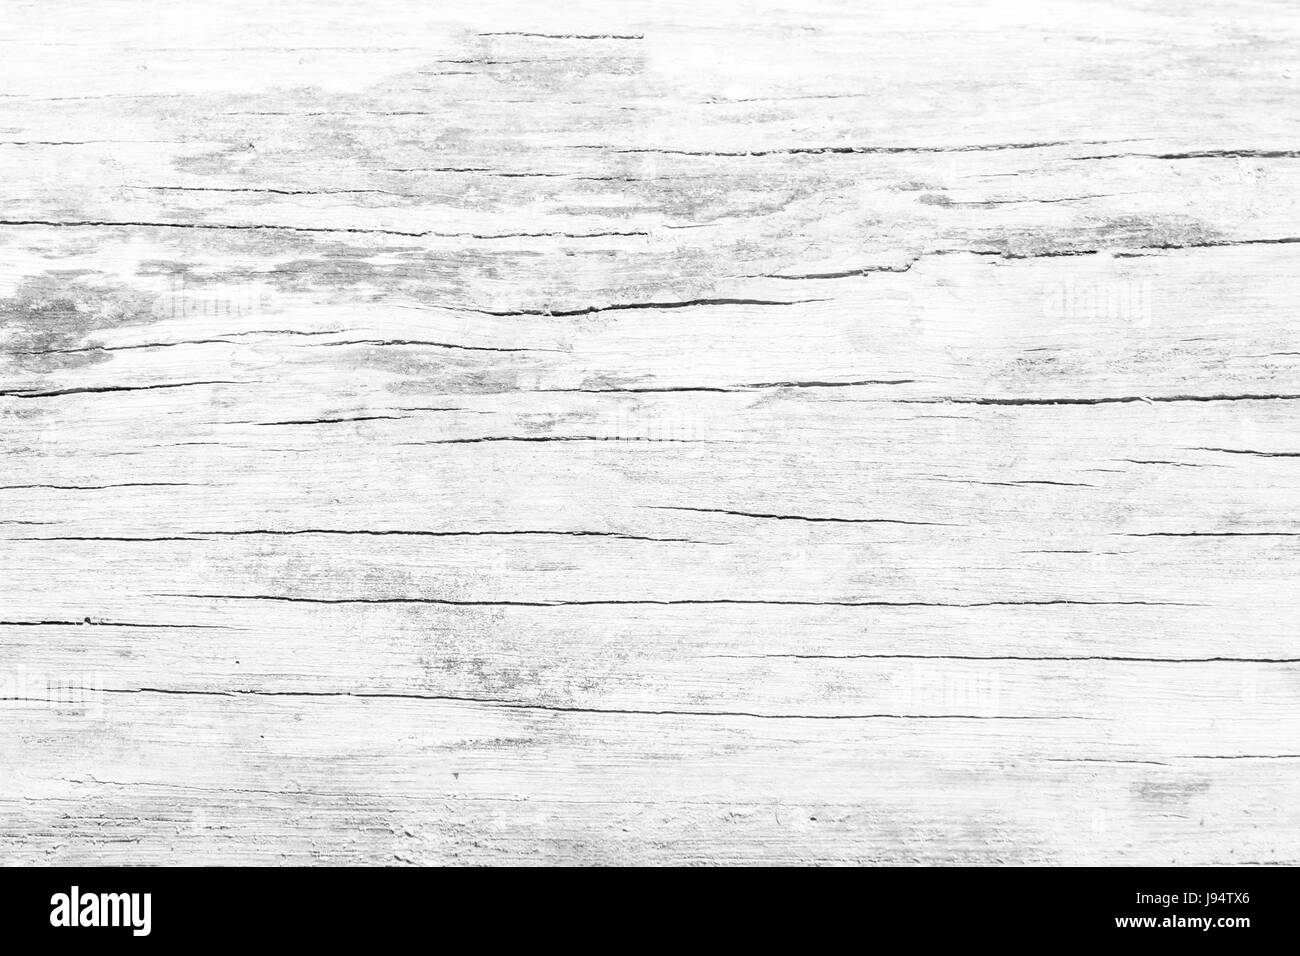 Nền gỗ trắng mộc mạc - không cần những kiểu trang trí phức tạp, màu sắc trắng ngà của nó đủ để tạo nên nét đẹp riêng của một ngôi nhà đơn giản và xinh đẹp. Nếu bạn đang tìm kiếm một phong cách đơn giản nhưng vẫn đầy chất thơ, hãy ngắm nhìn bức hình này.